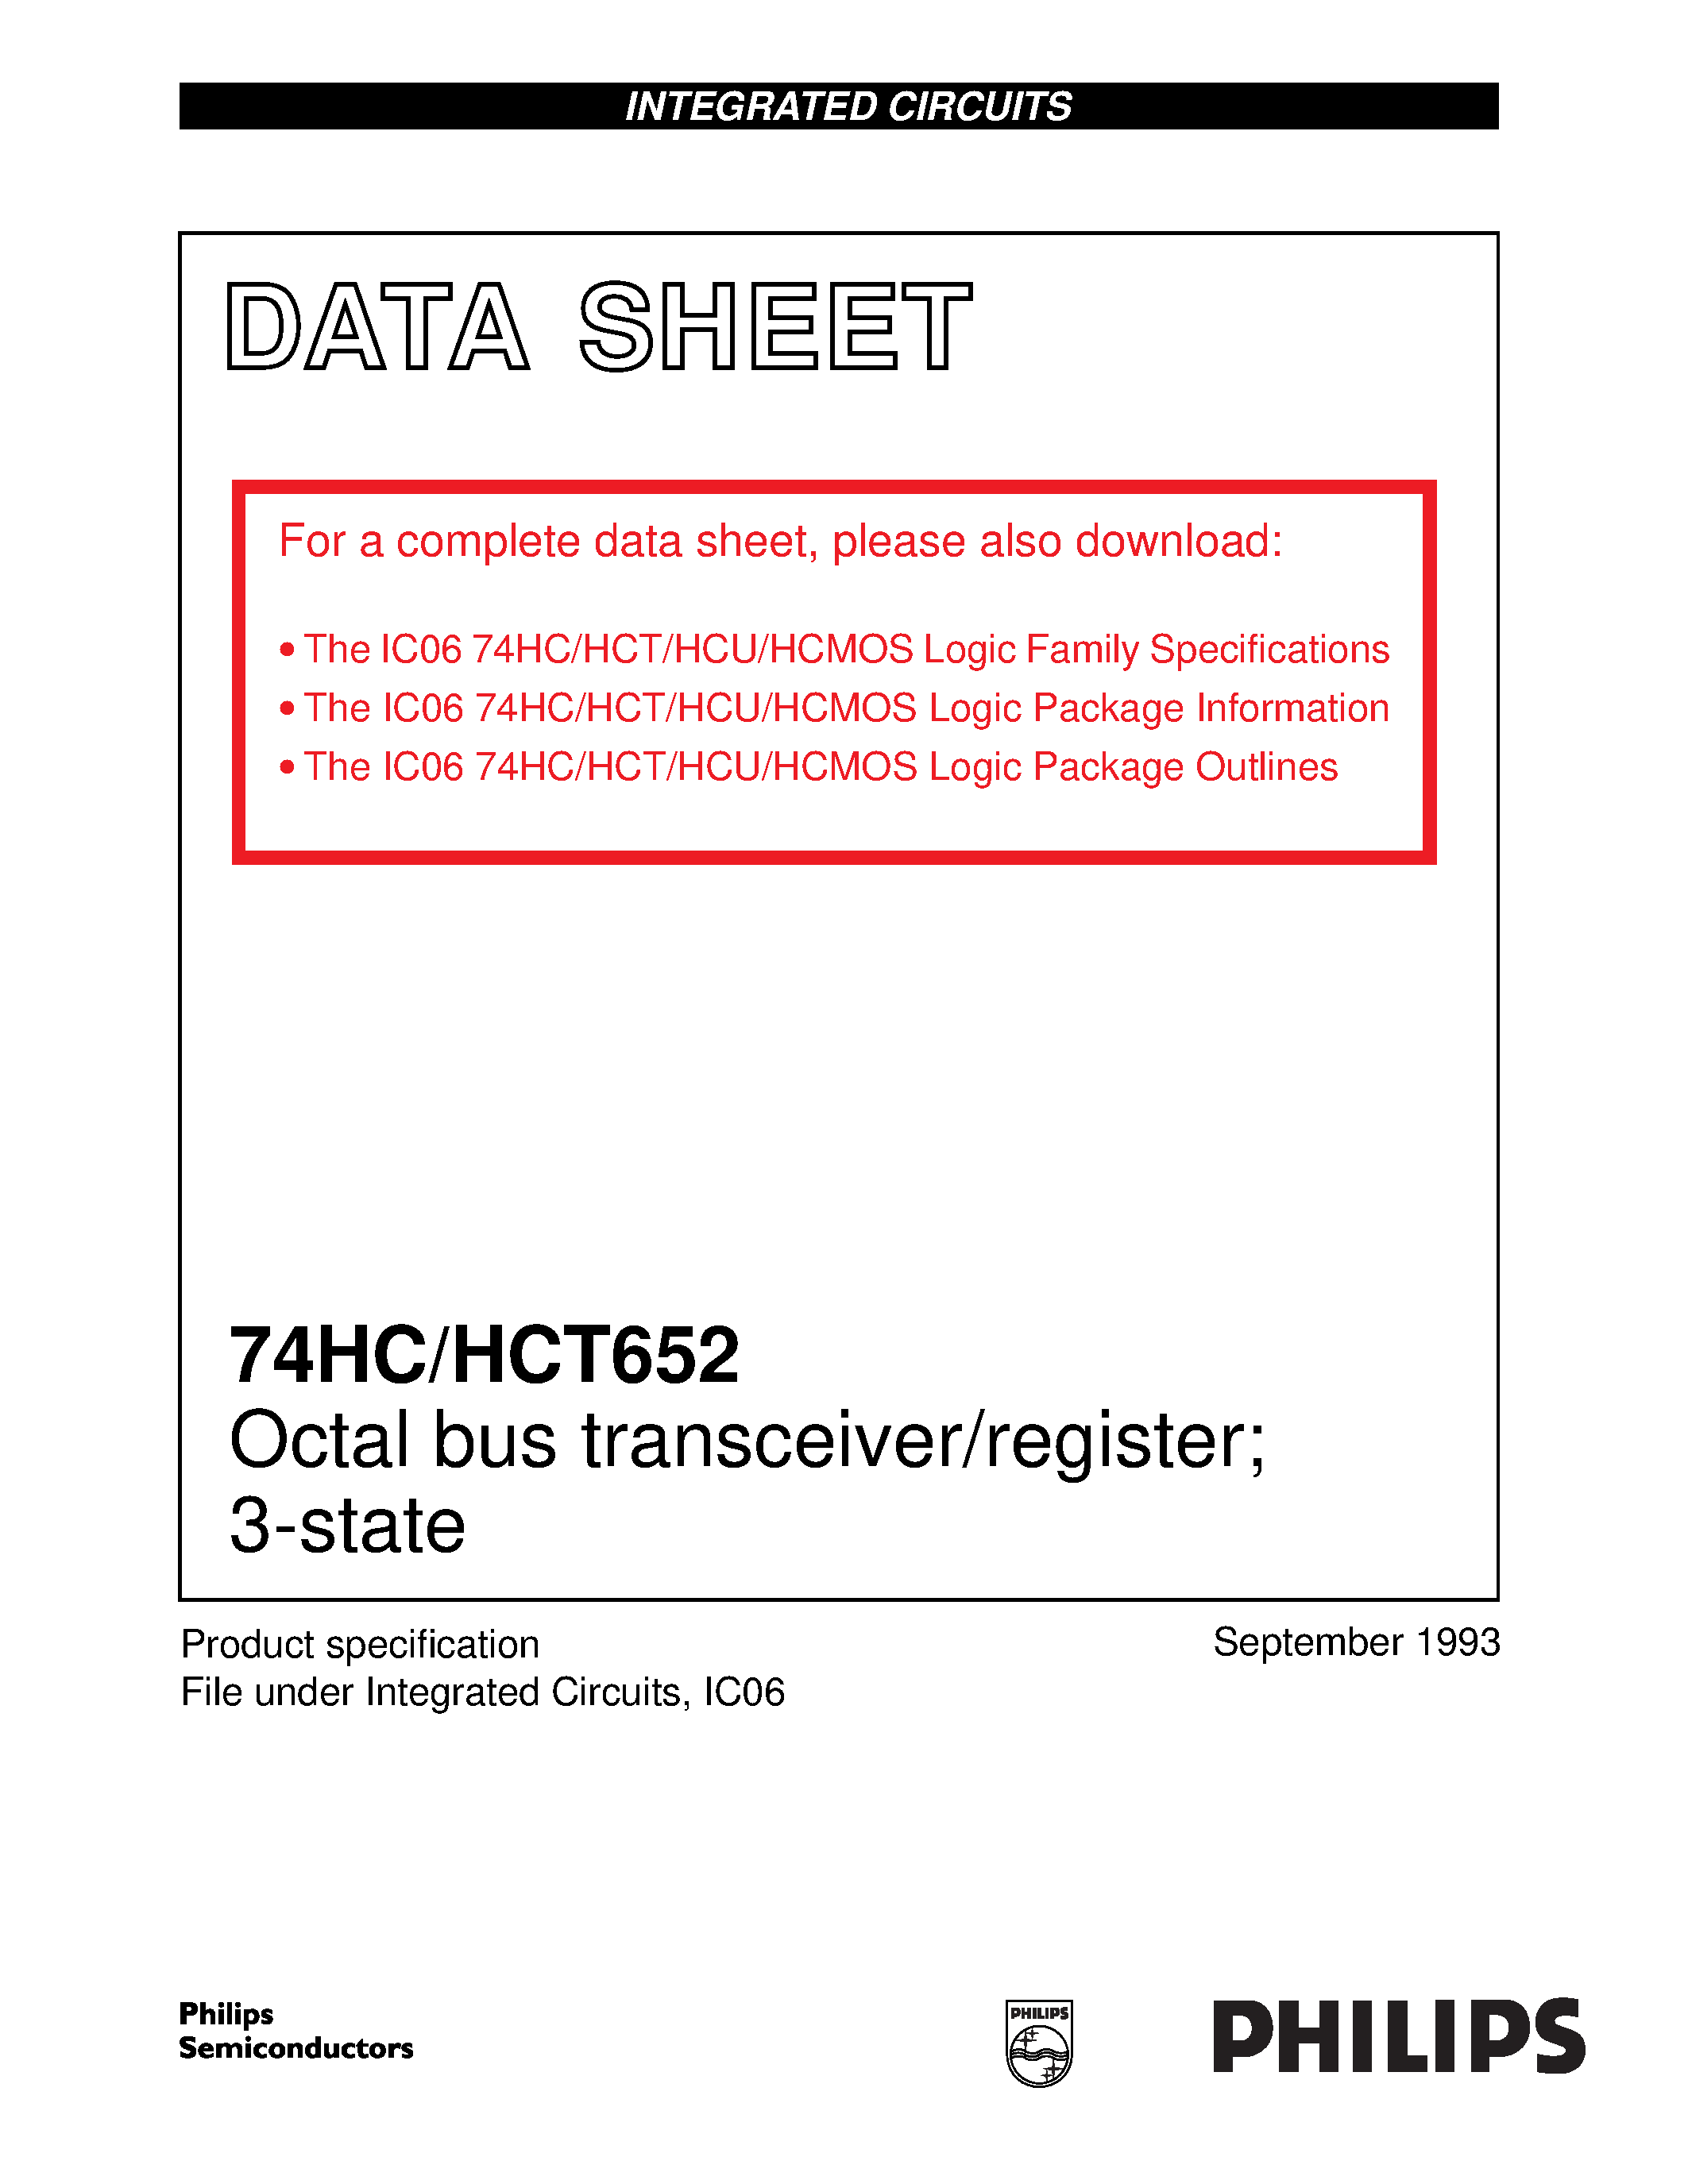 Даташит 74HCT652D - Octal bus transceiver/register; 3-state страница 1